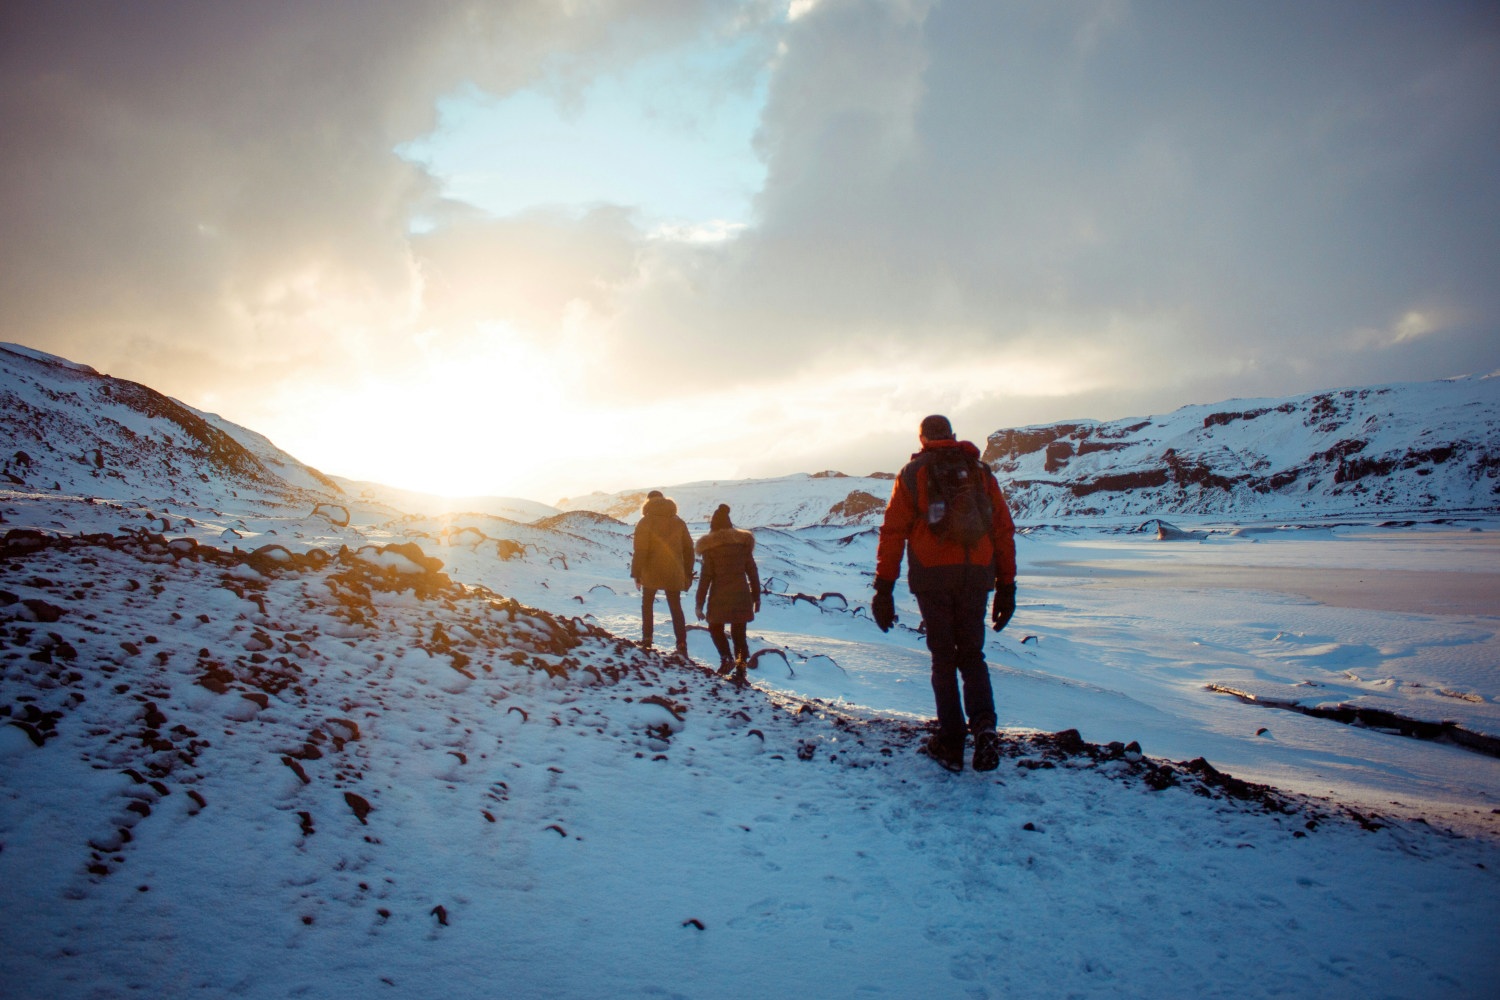 Wandergruppe, Sonnenuntergang, Schneelandschaft,Island